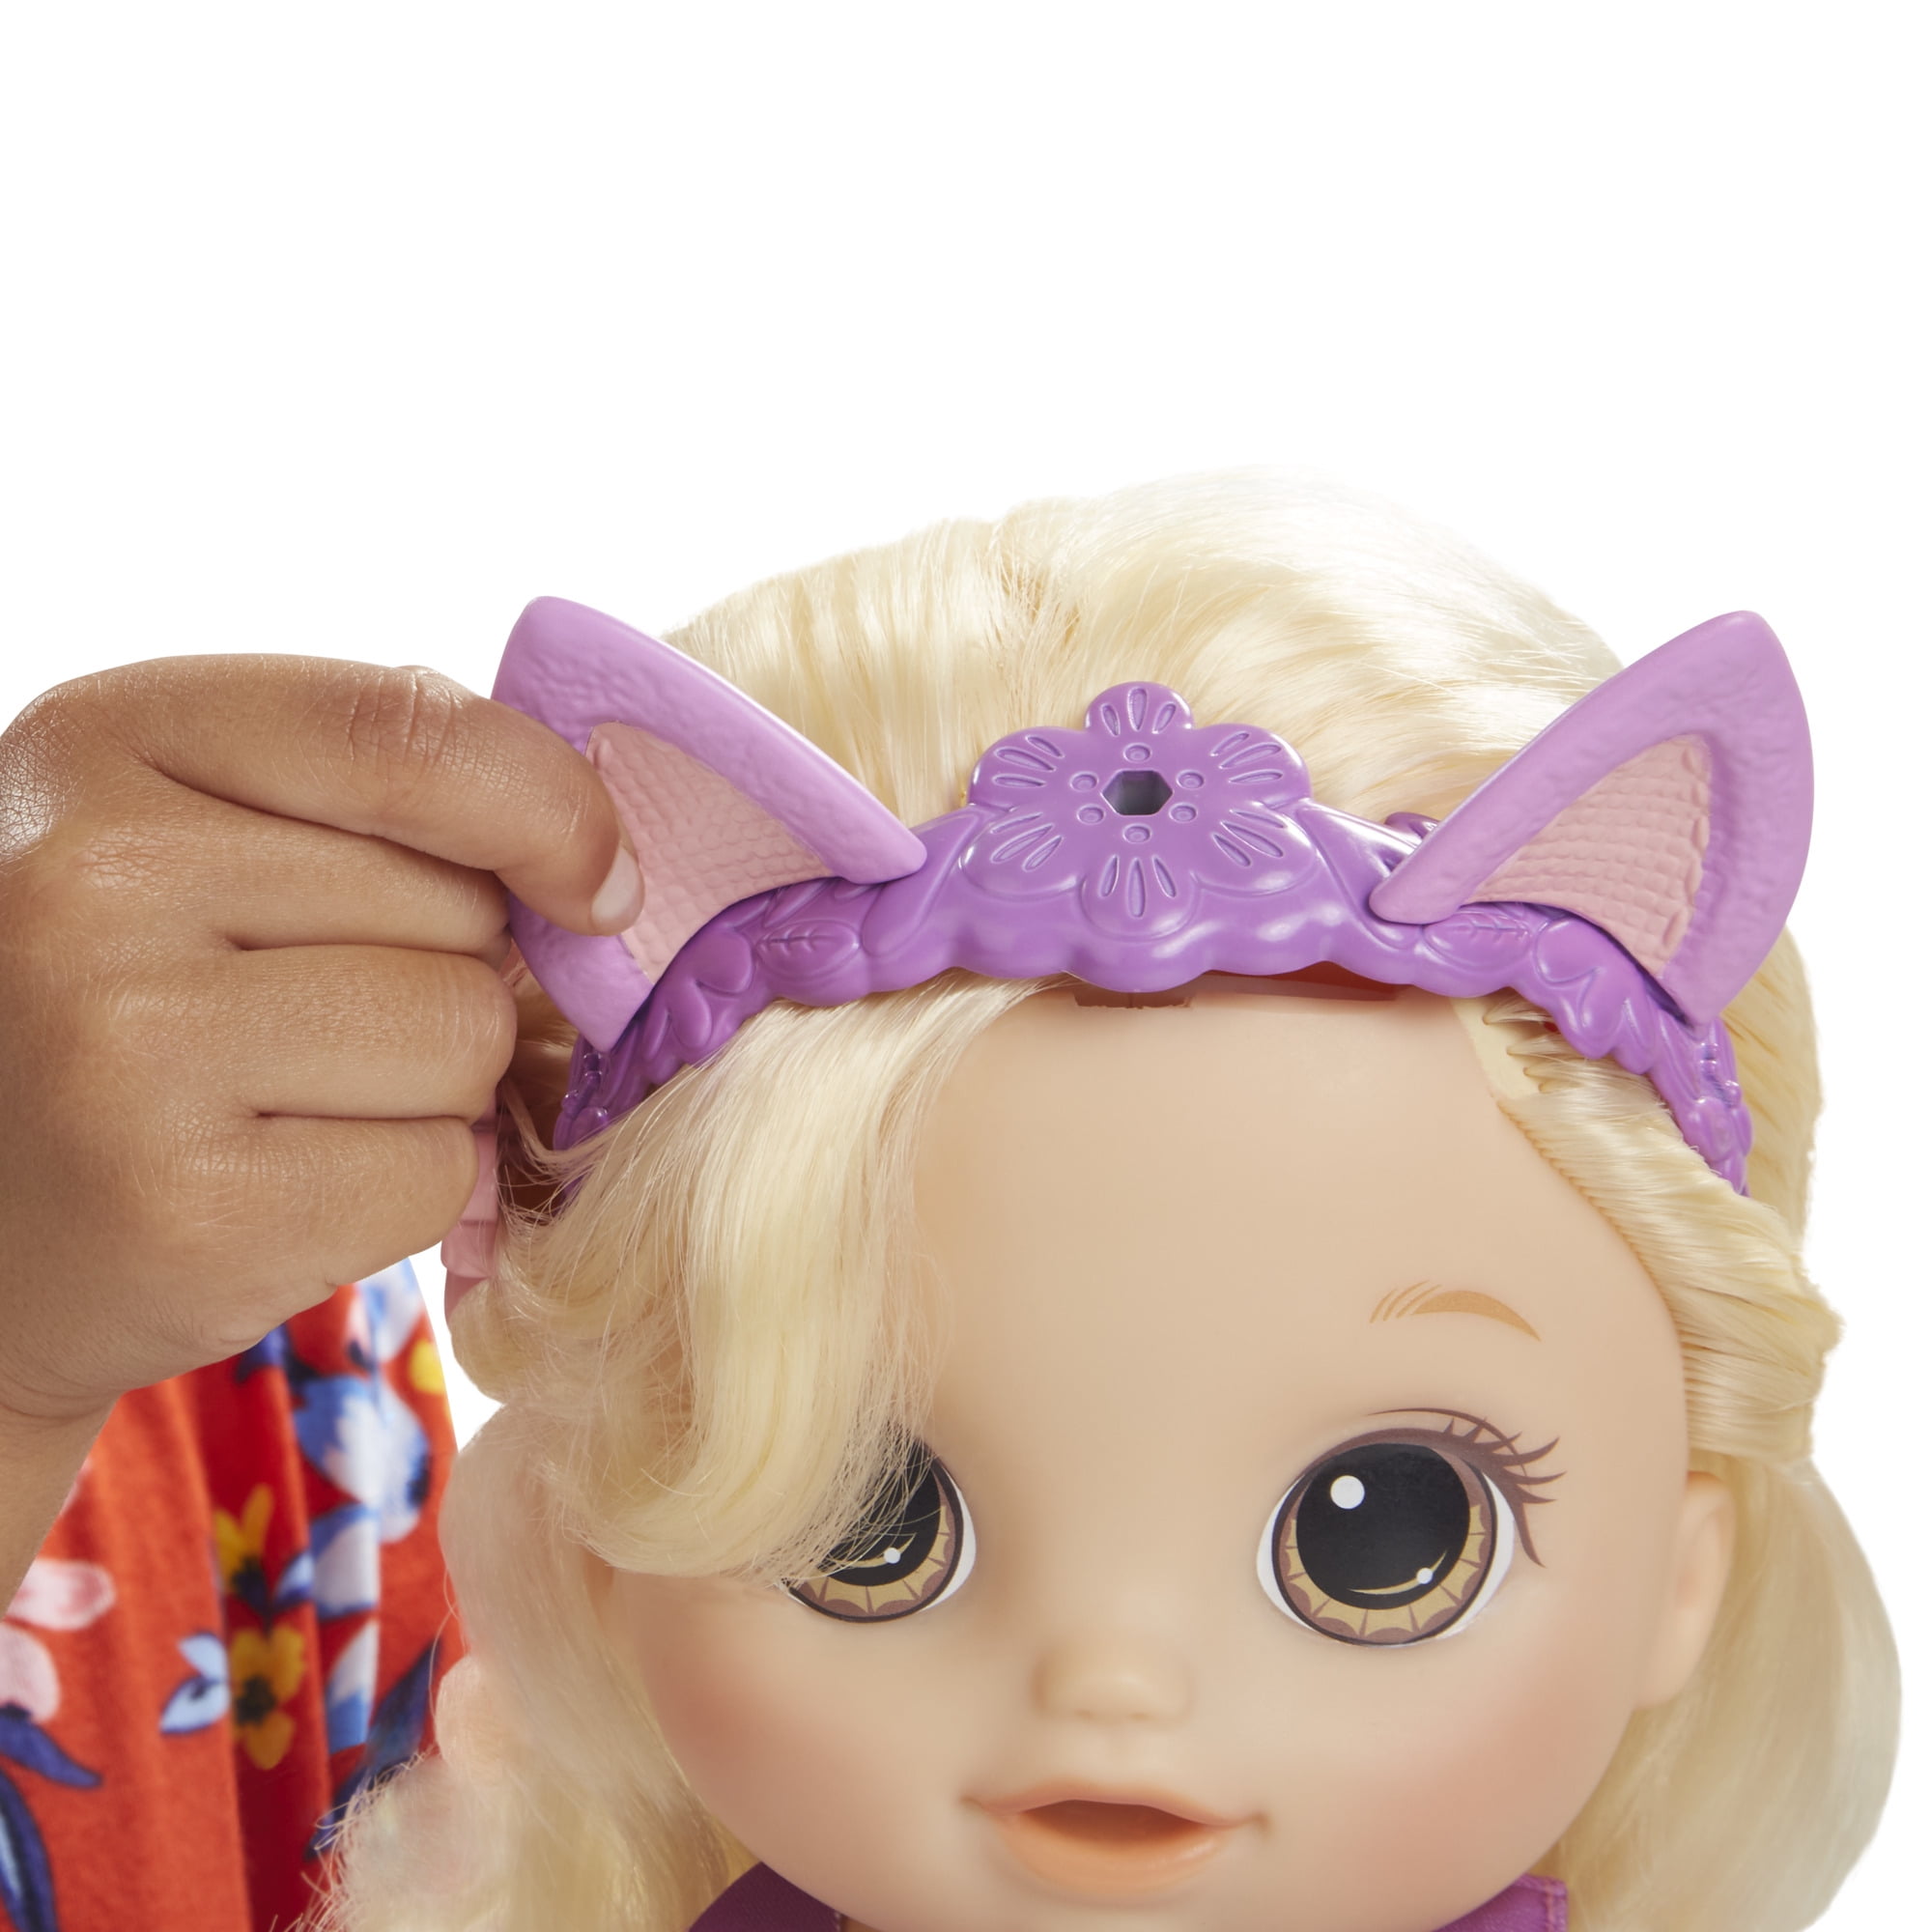 Baby Alive: Snip 'n Style Baby 15-Inch Doll Blonde Hair, Brown Eyes